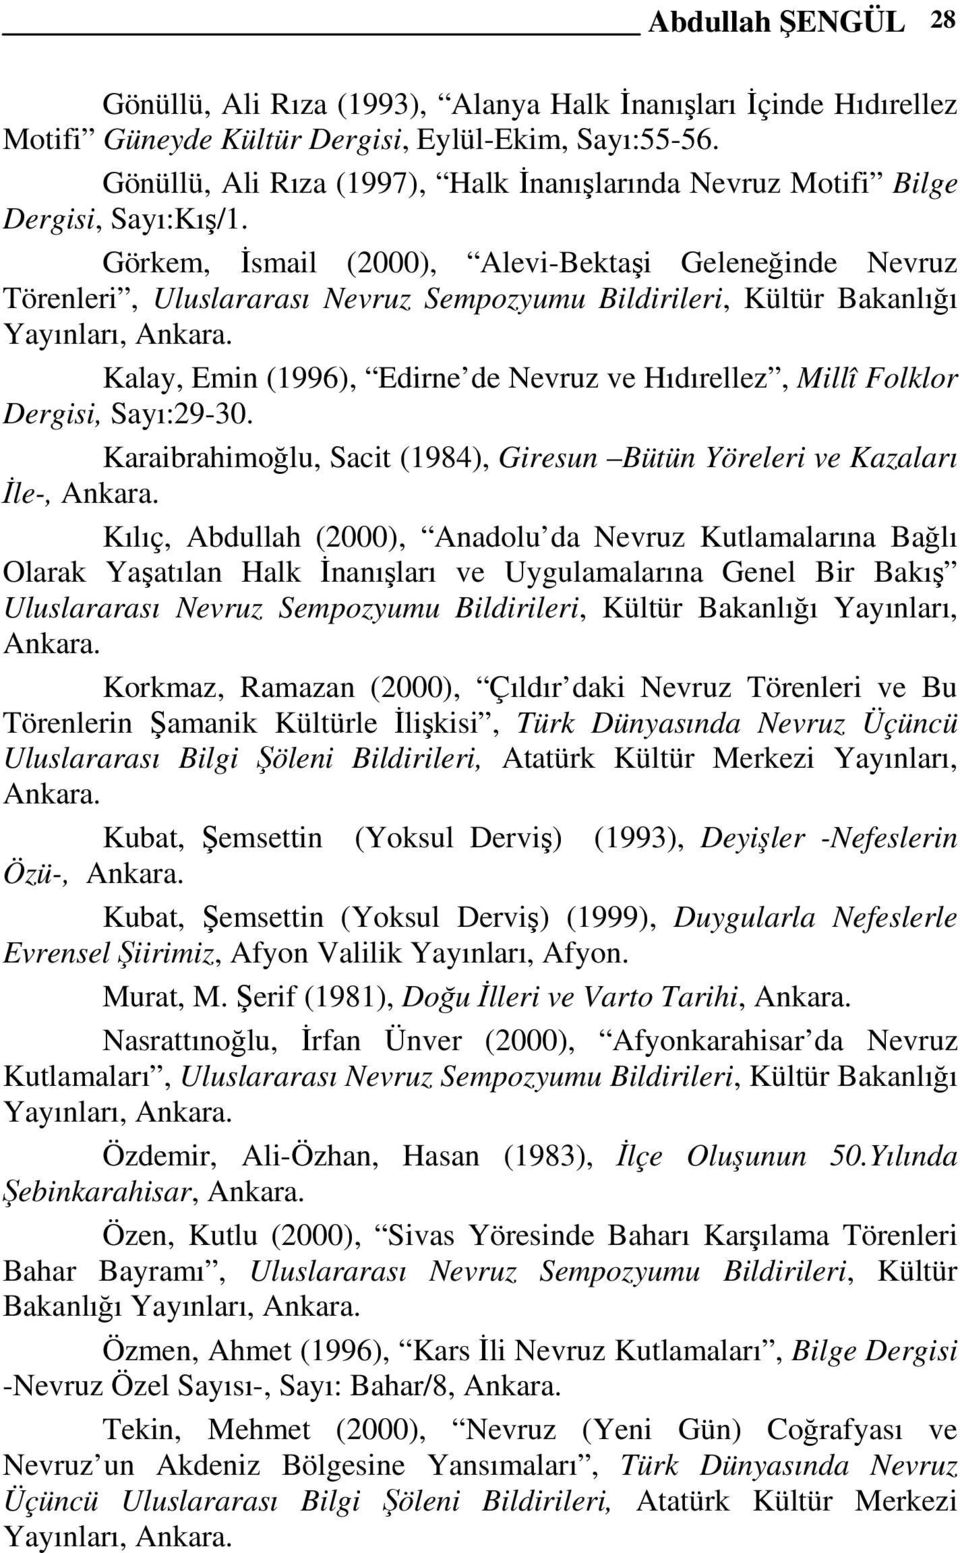 Görkem, İsmail (2000), Alevi-Bektaşi Geleneğinde Nevruz Törenleri, Uluslararası Nevruz Sempozyumu Bildirileri, Kültür Bakanlığı Yayınları, Ankara.